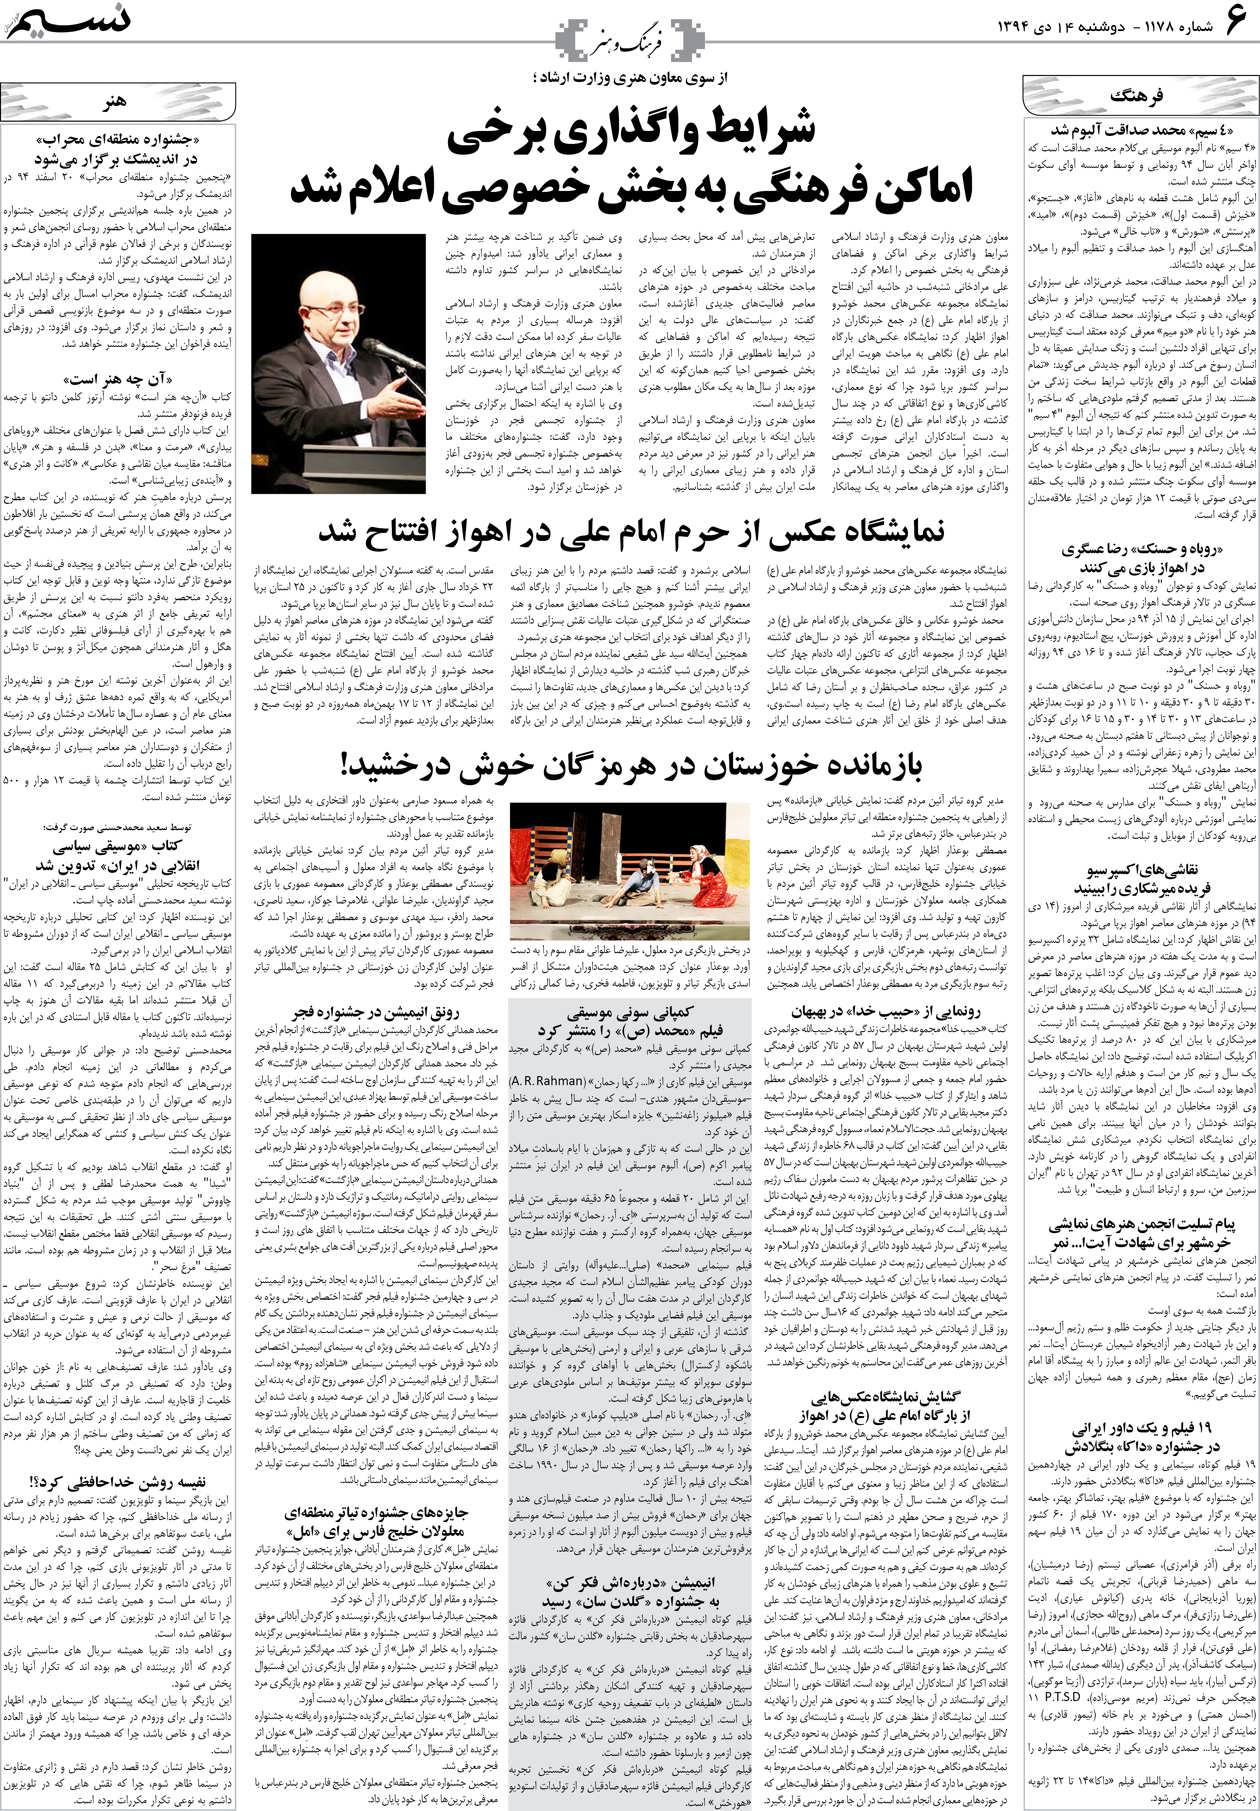 صفحه فرهنگ و هنر روزنامه نسیم شماره 1178